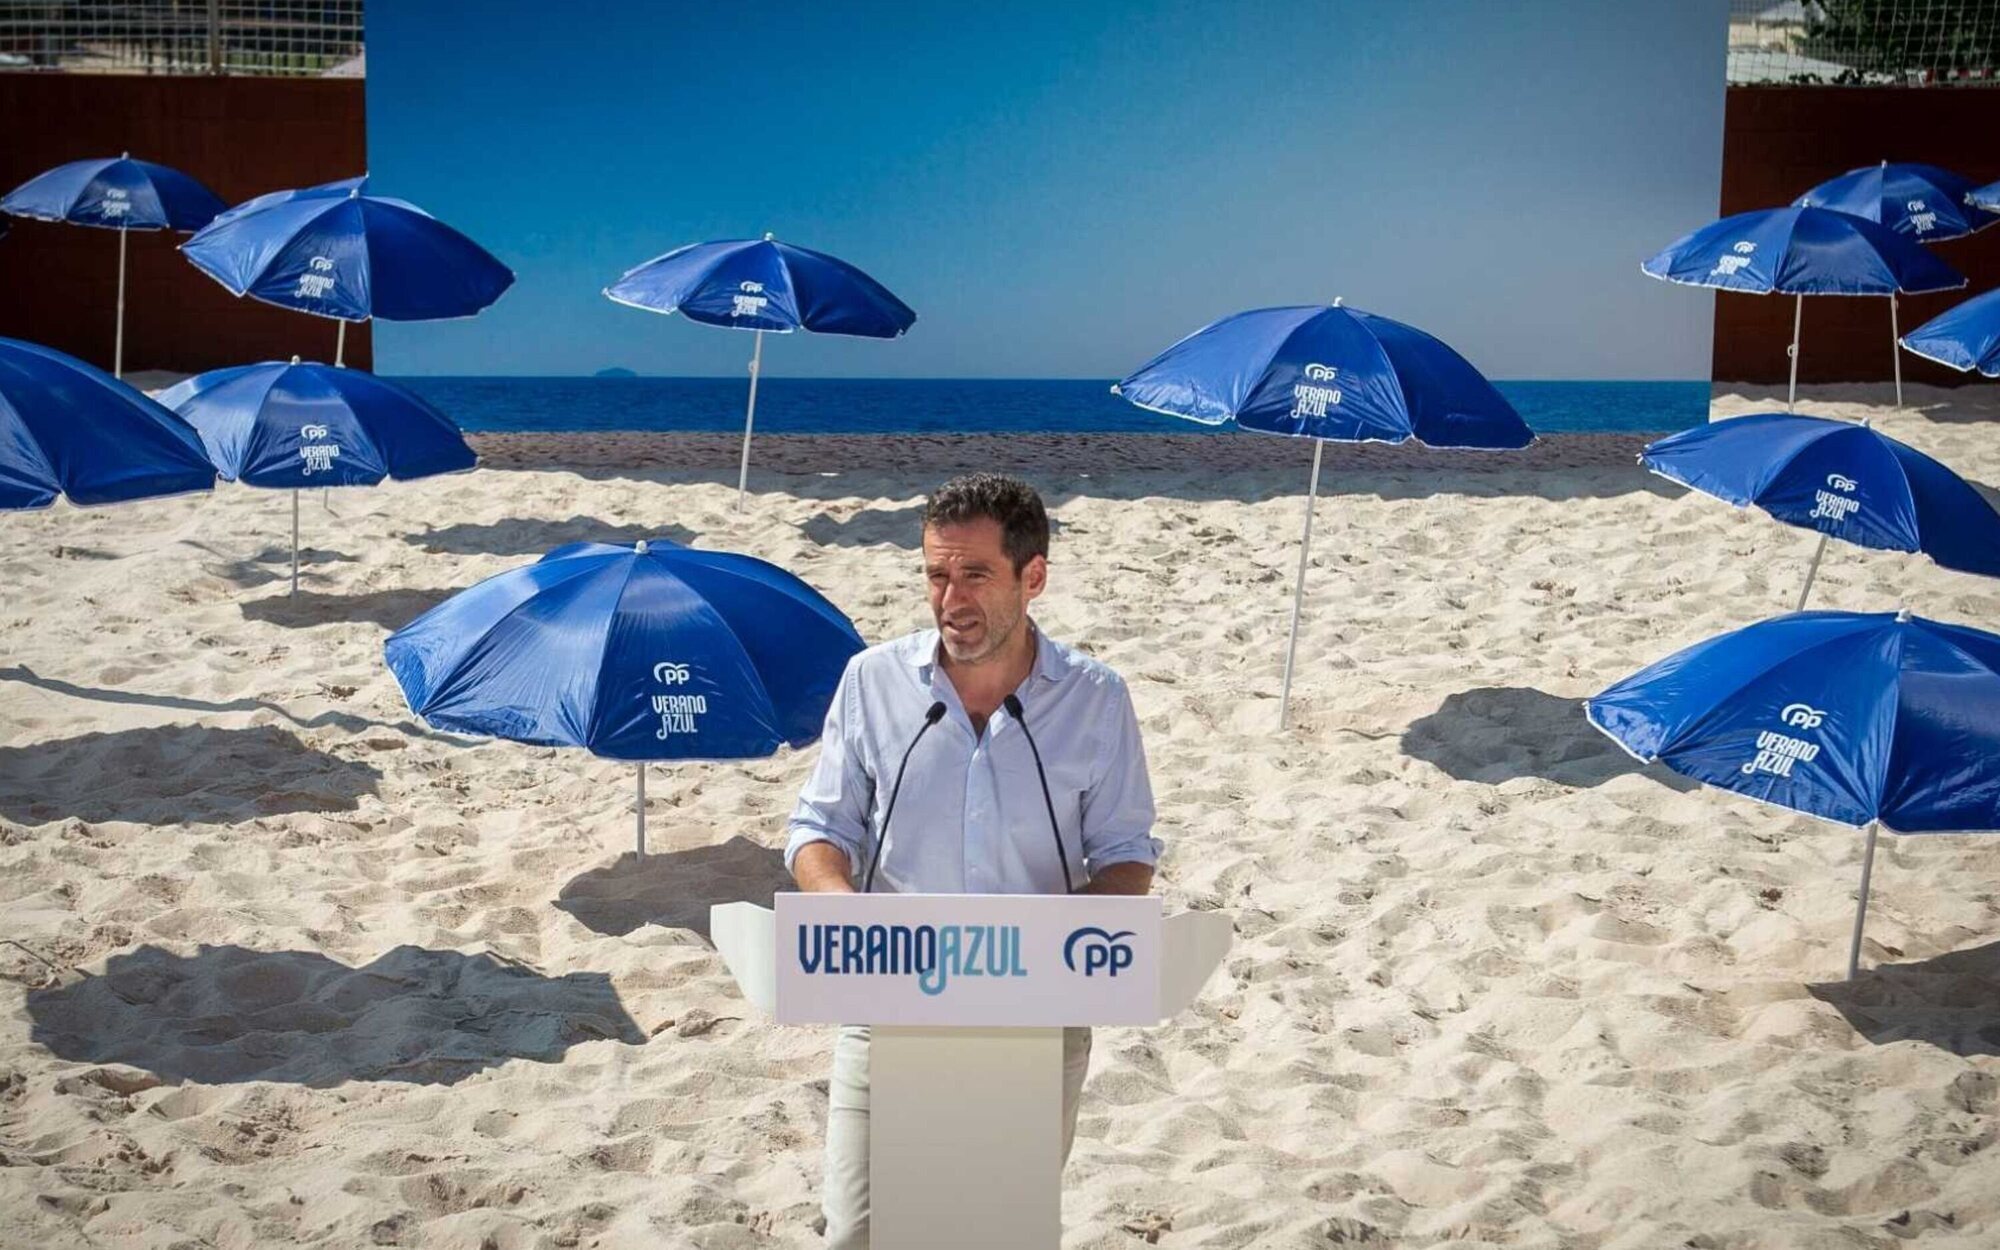 RTVE solicita al PP que deje de utilizar la marca "Verano Azul" en su campaña electoral